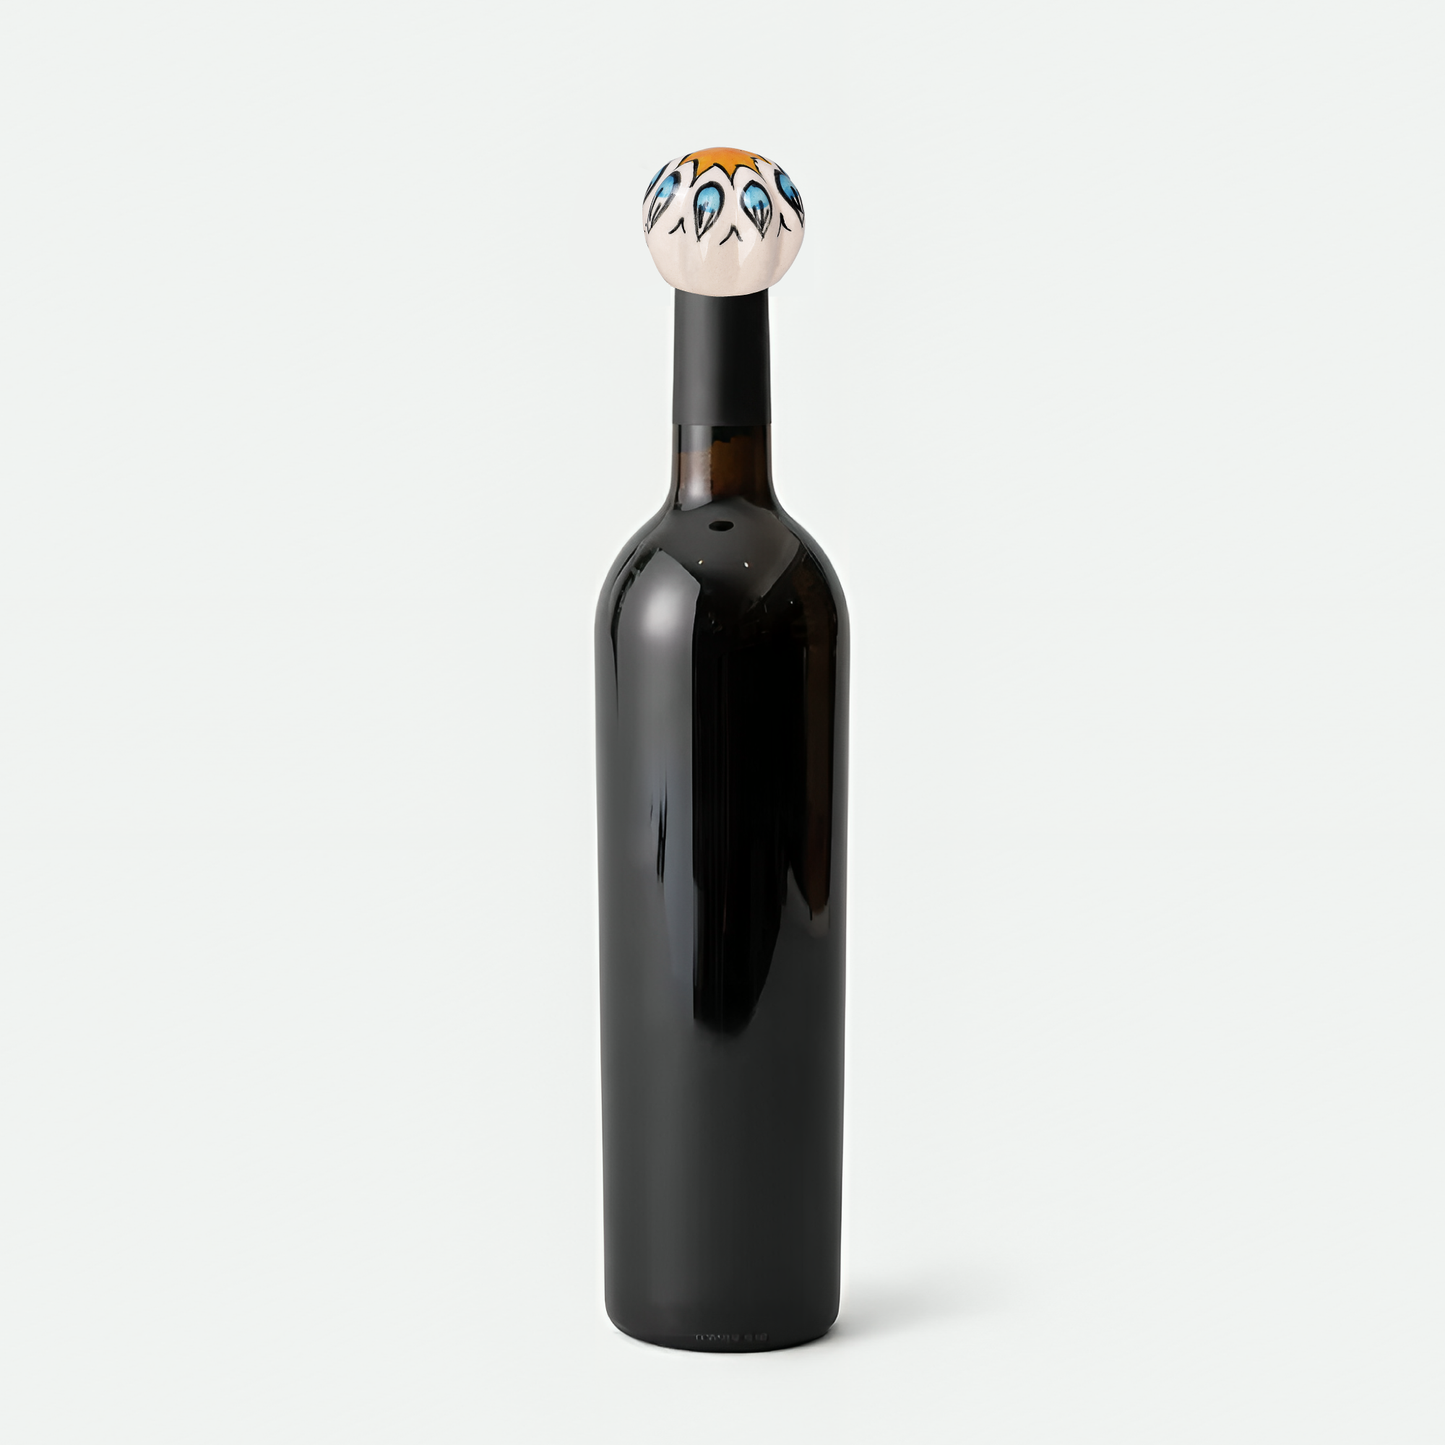 Ceramic Sun Design Wine Bottle Stopper